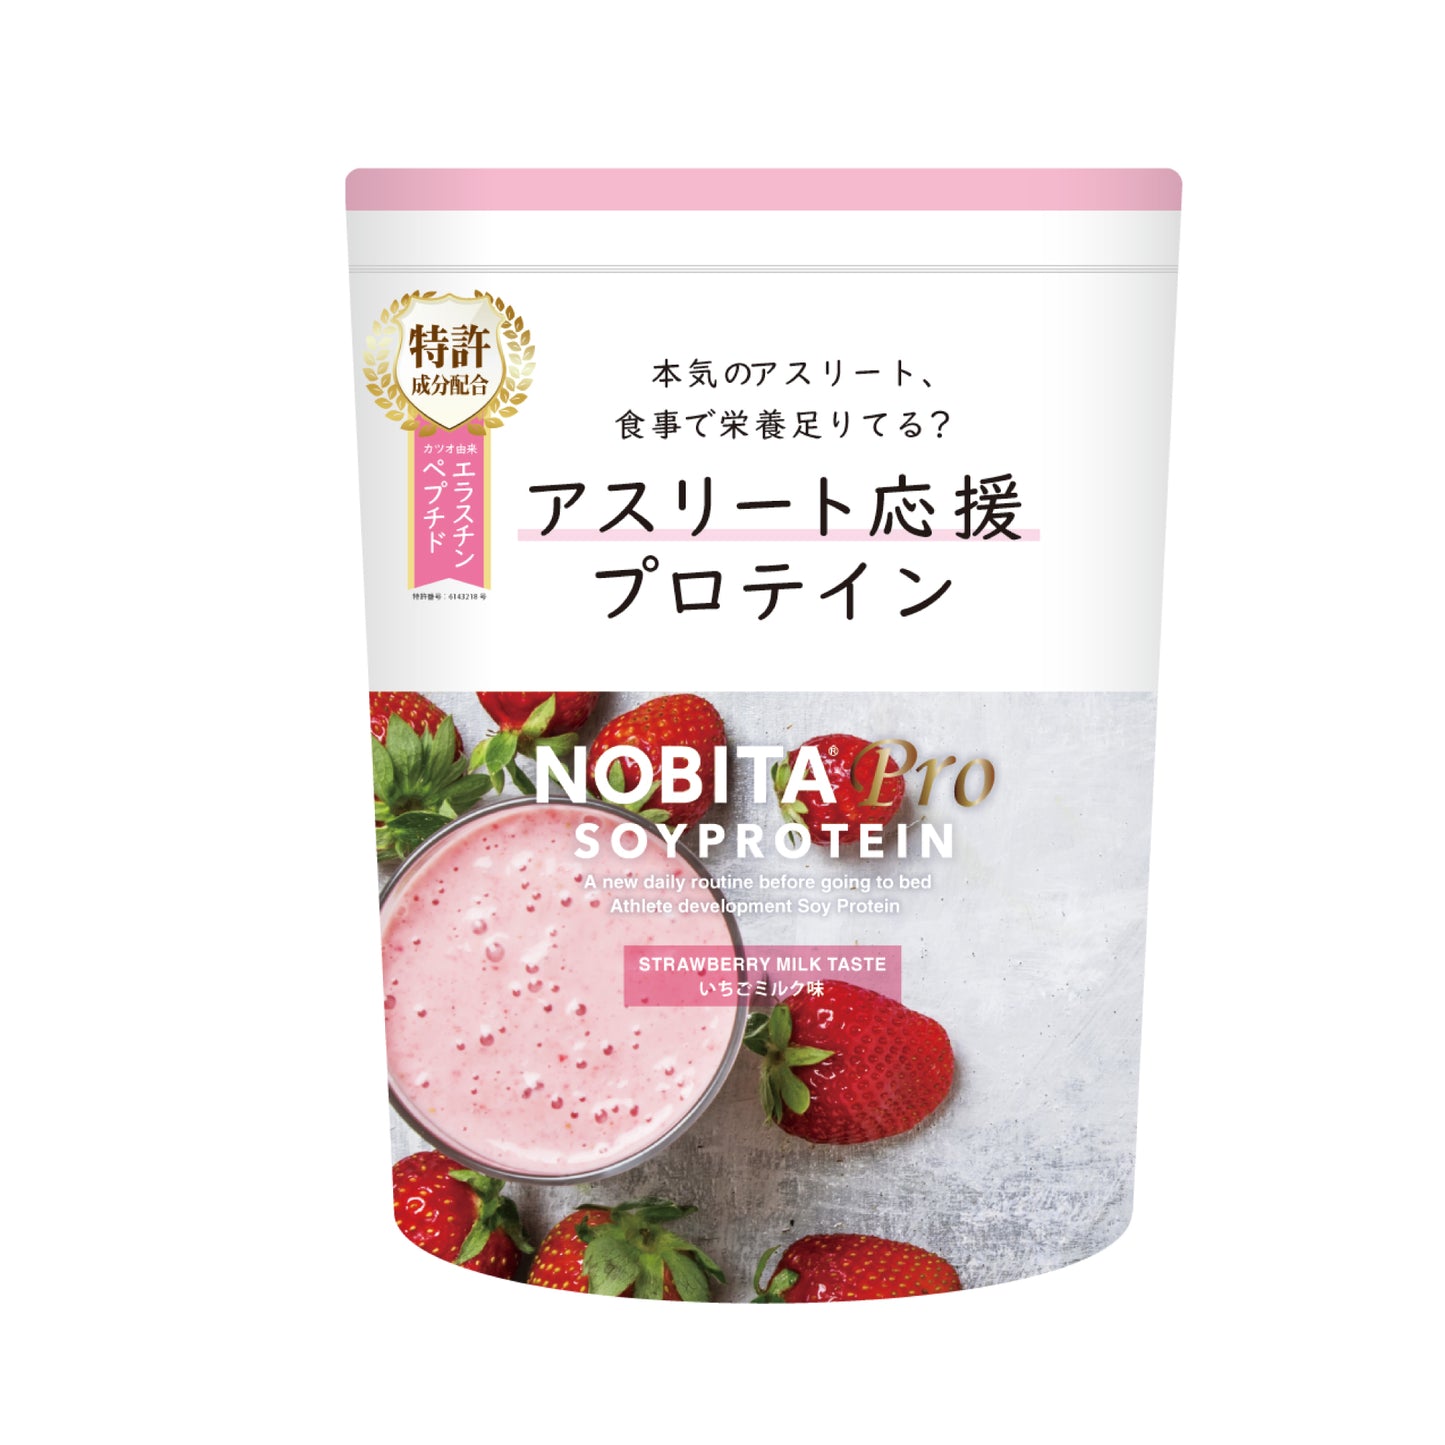 NOBITA-Proソイプロテイン - いちごミルク味 750g